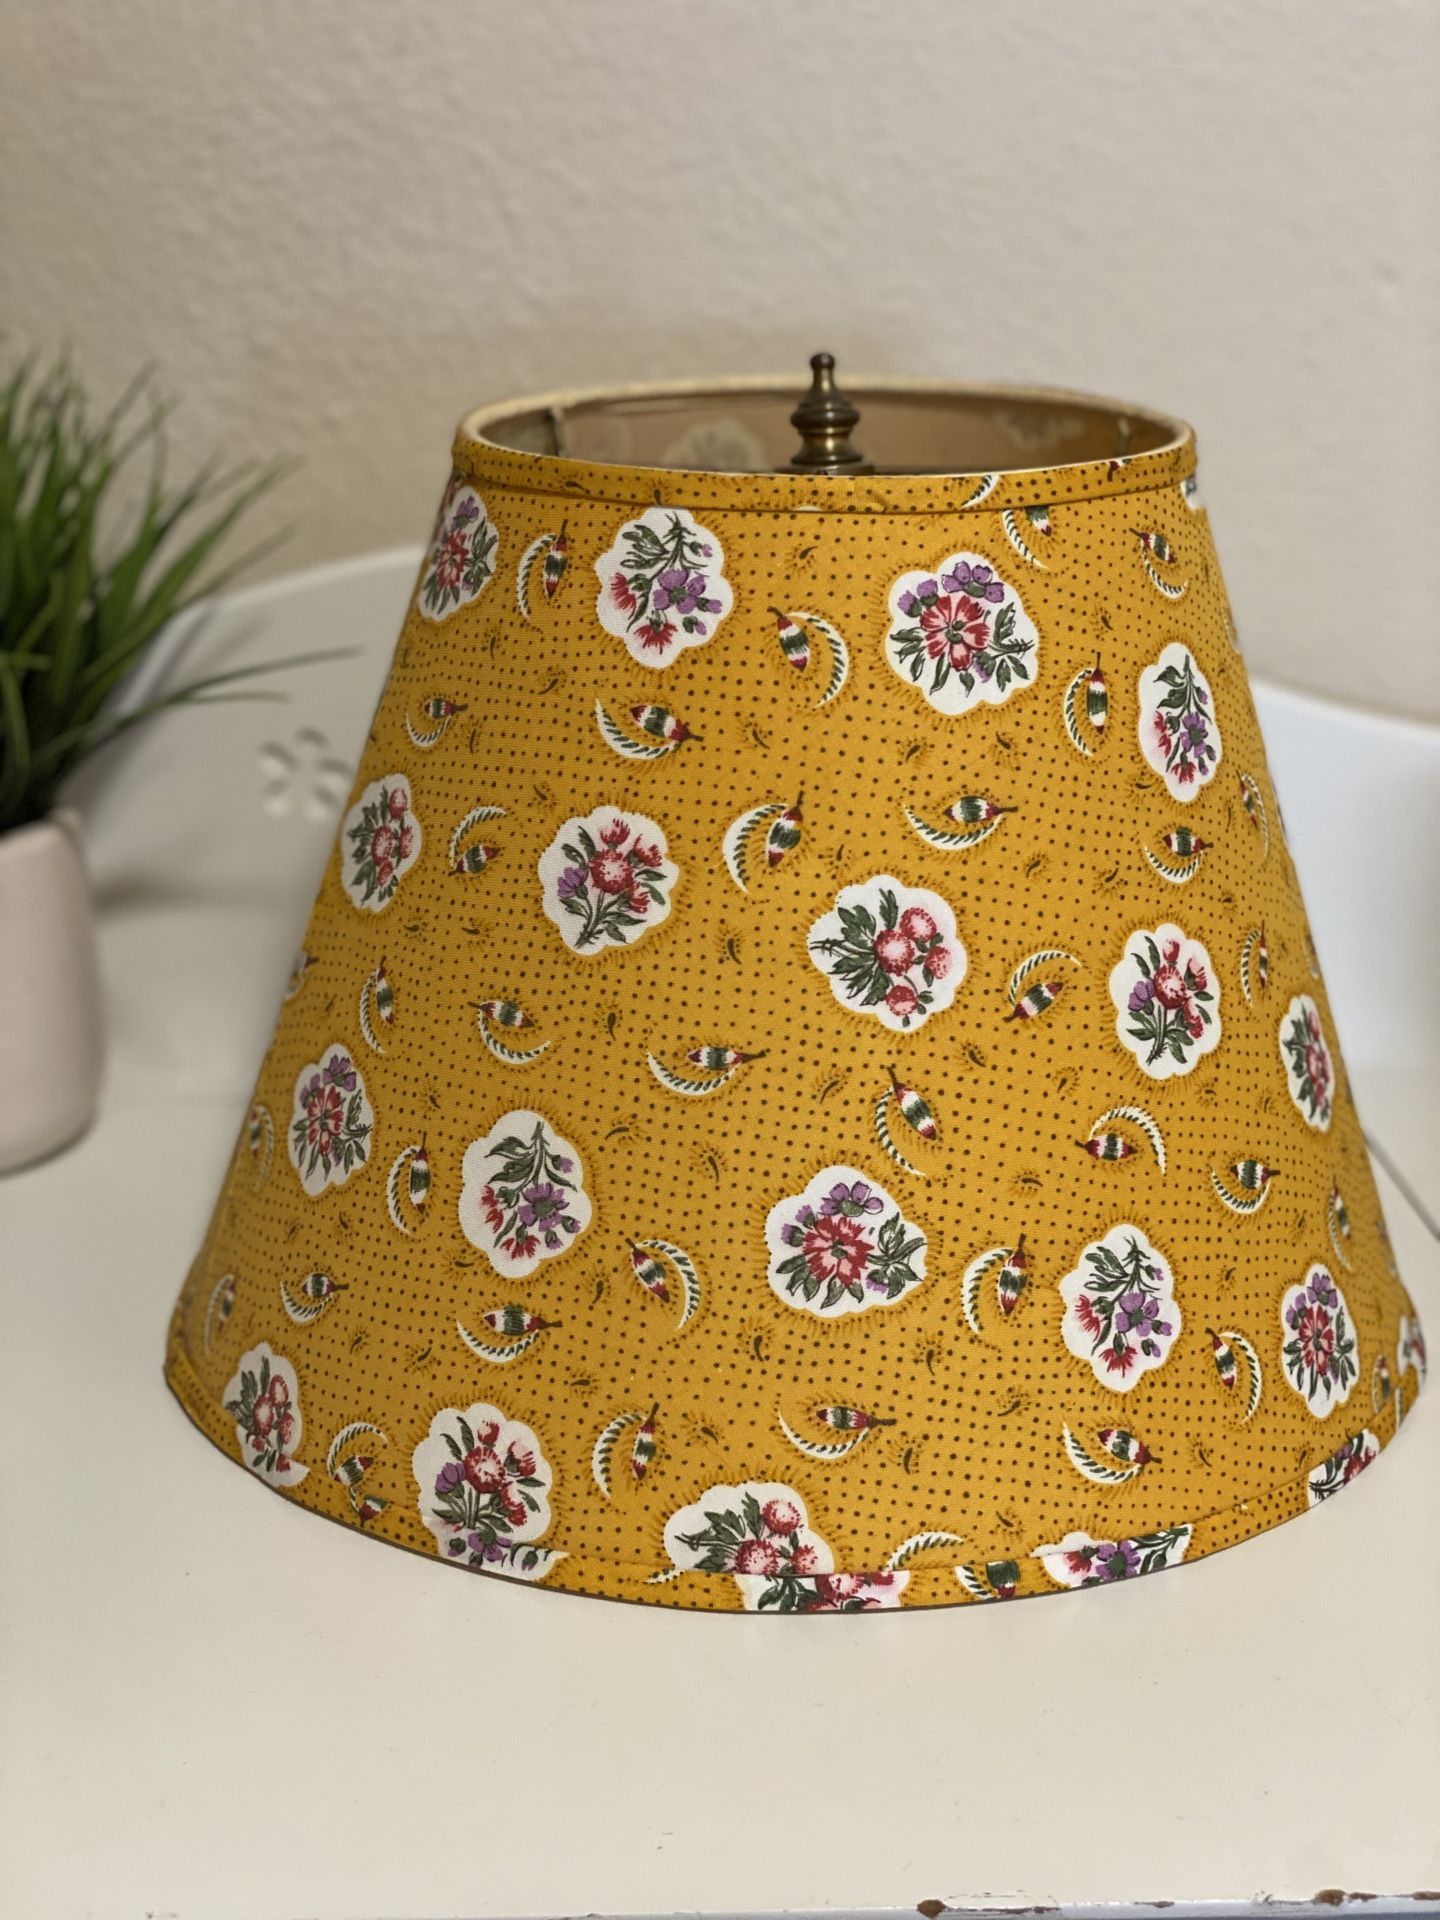 Darling Yellow lamp shade